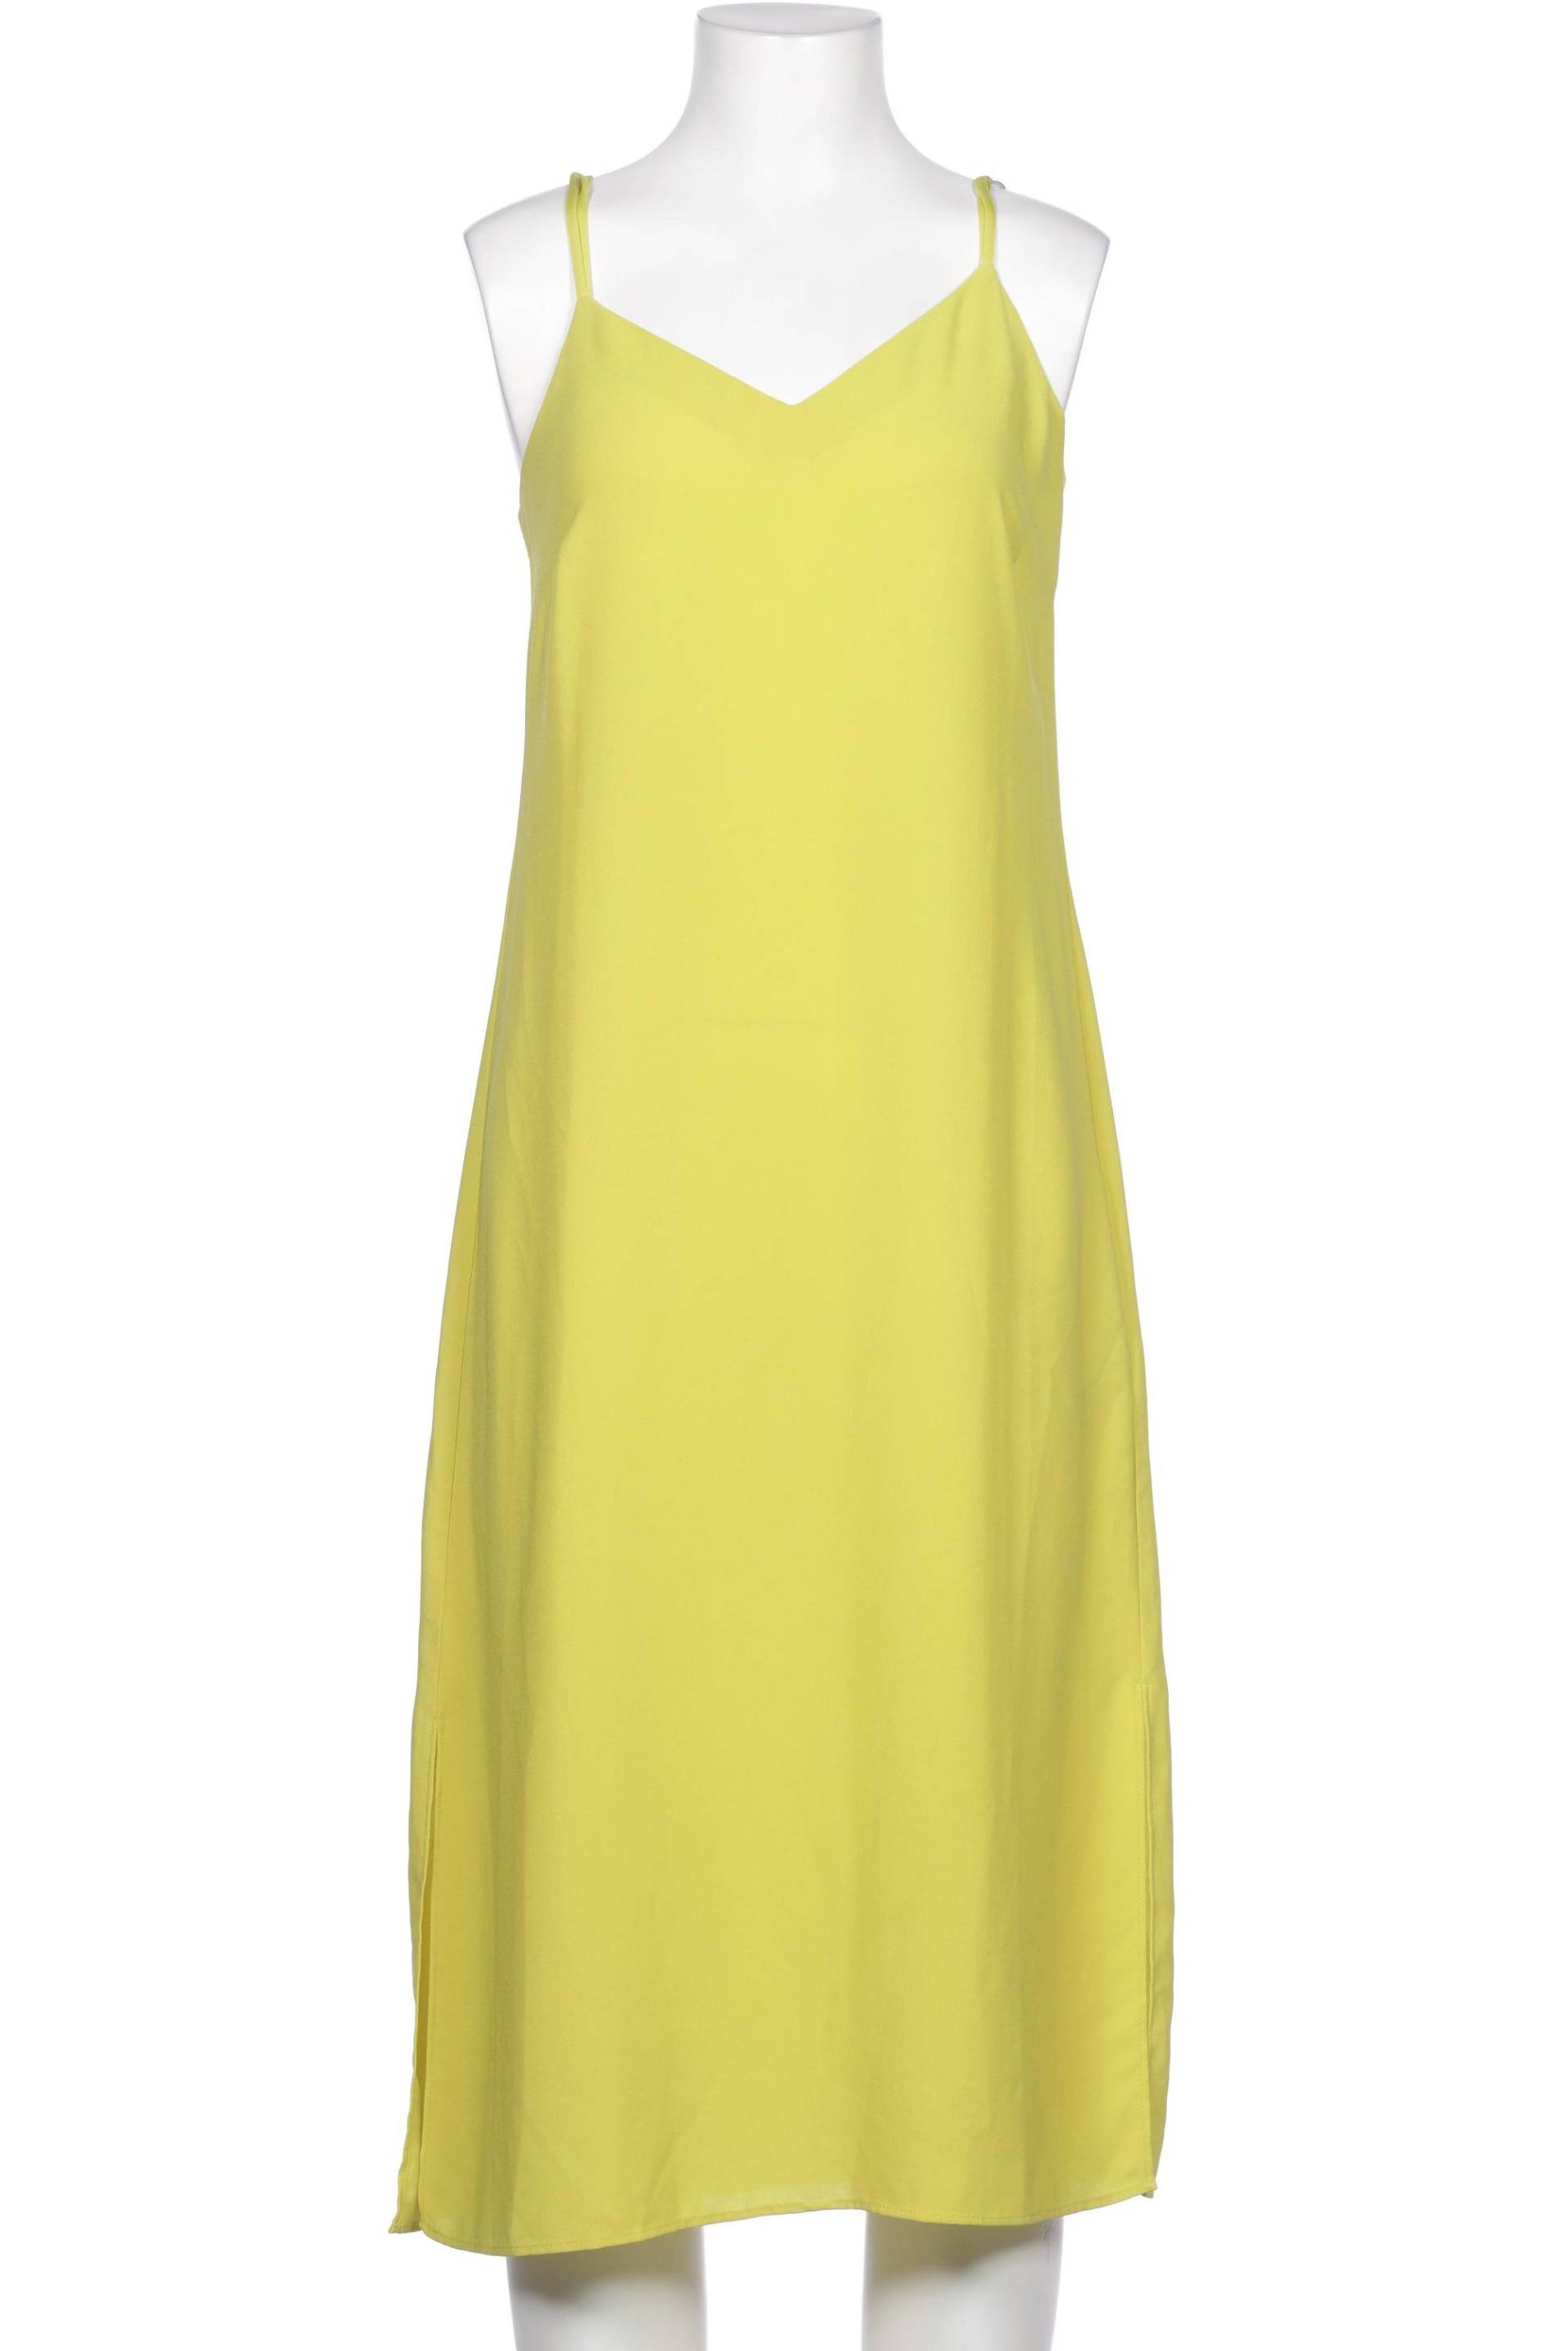 Warehouse Damen Kleid, gelb, Gr. 32 von WAREHOUSE